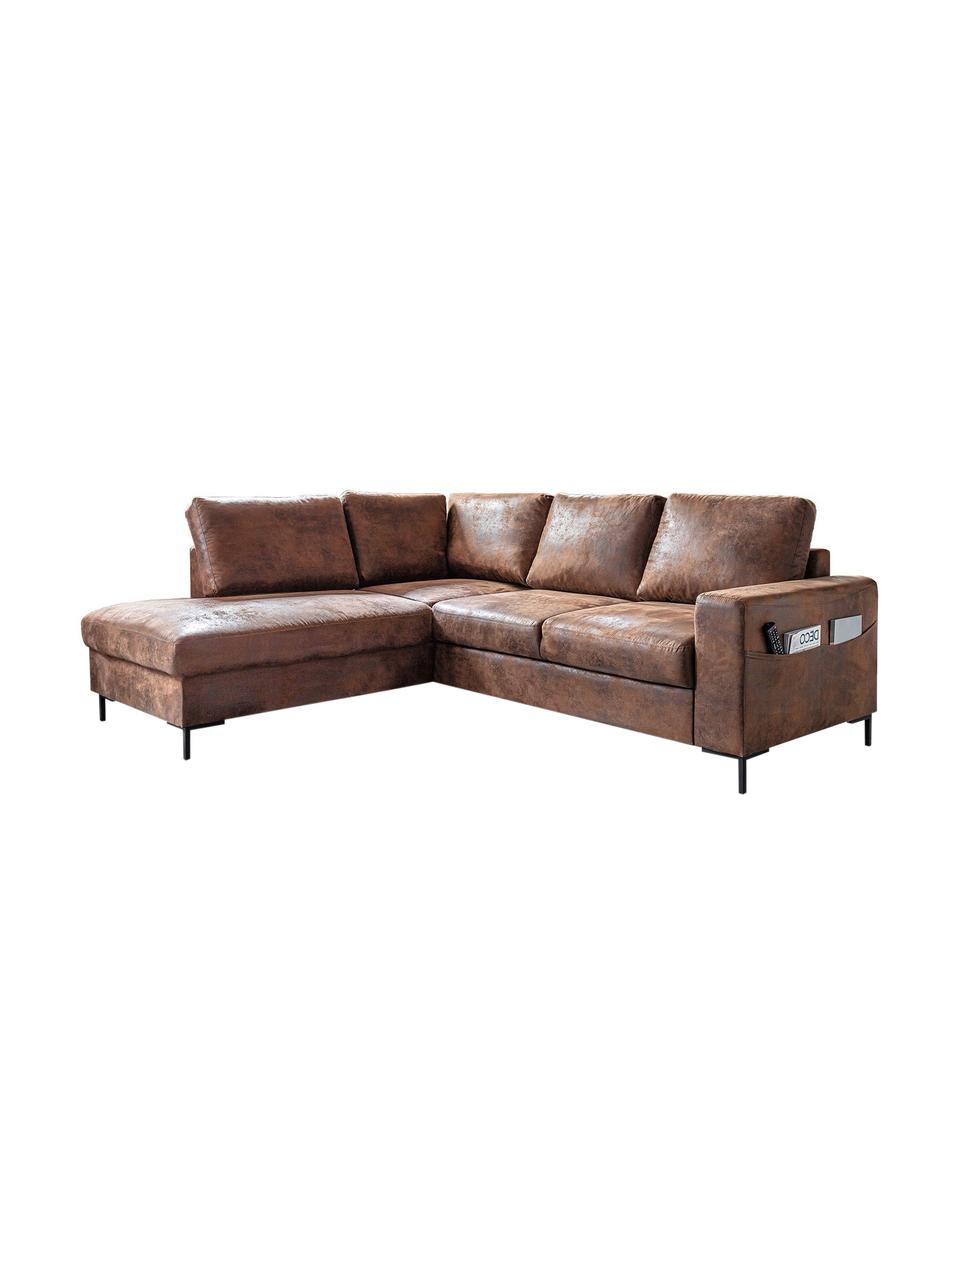 Sofa narożna z funkcją spania Lilly, Tapicerka: 100% mikrofibra, Brązowy, S 237 x G 197 cm